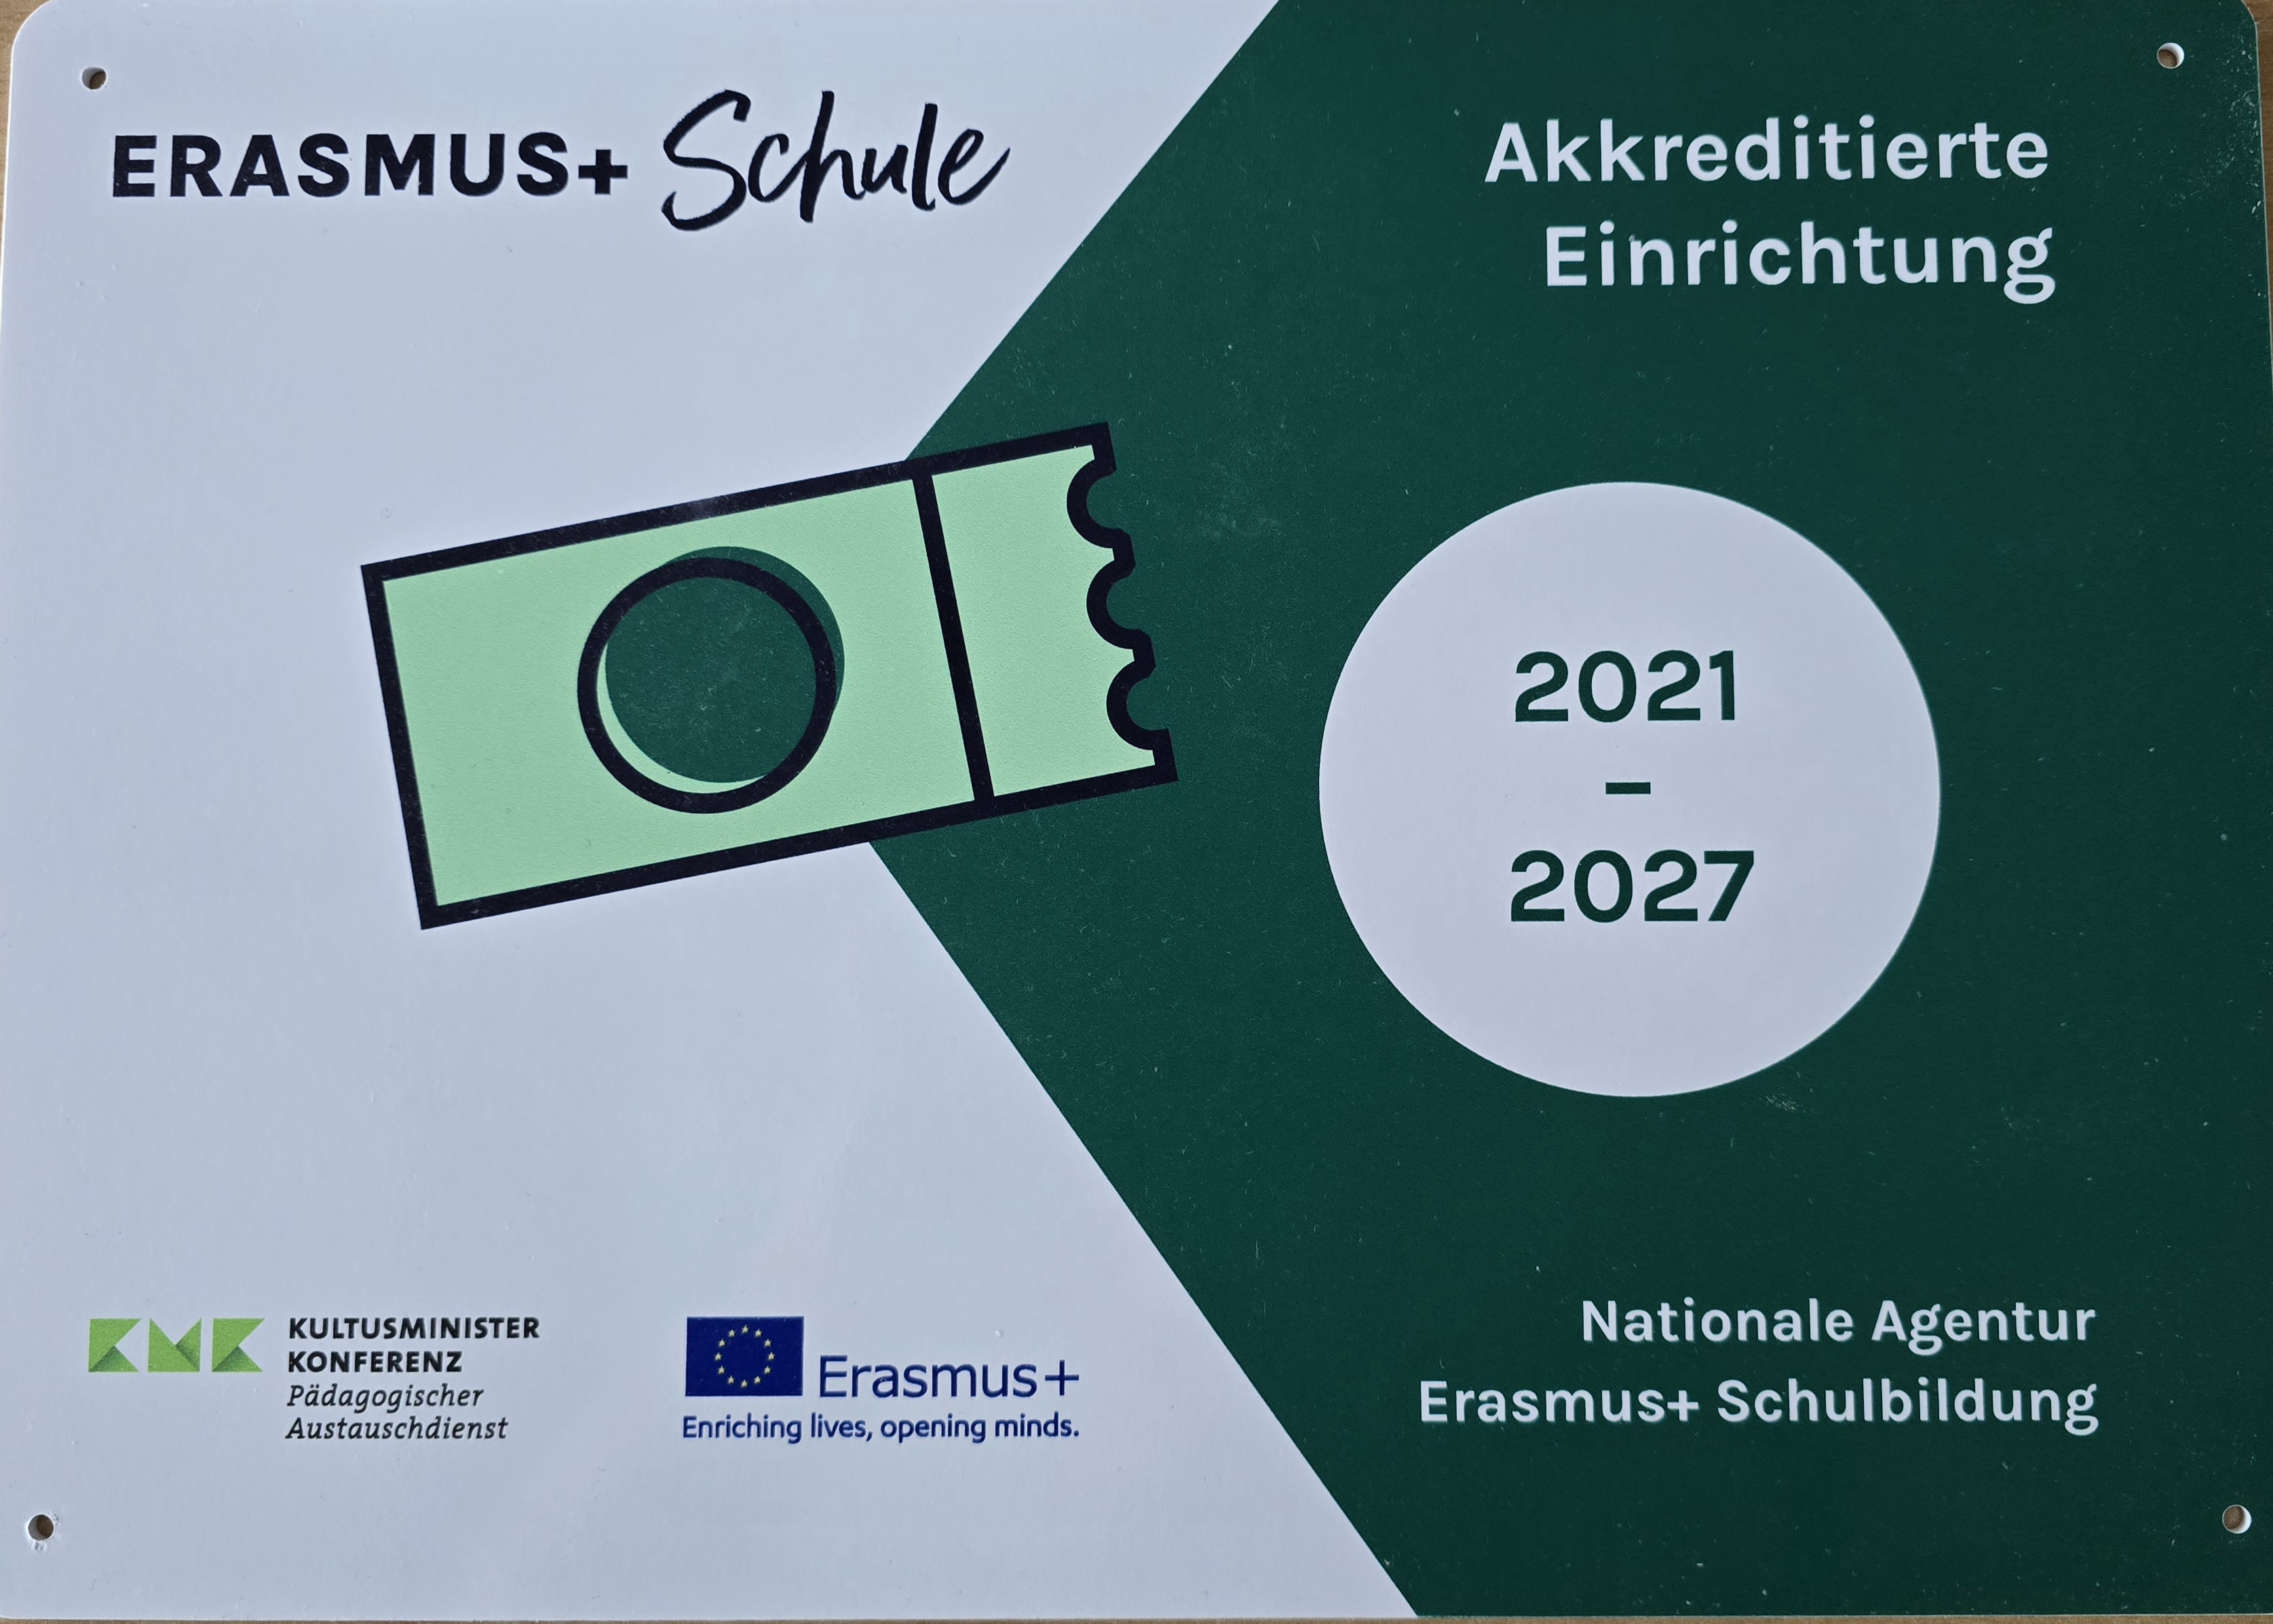 Camino Europa 24 + Thomaeum bleibt Erasmus+ Schule bis mindestens 2027